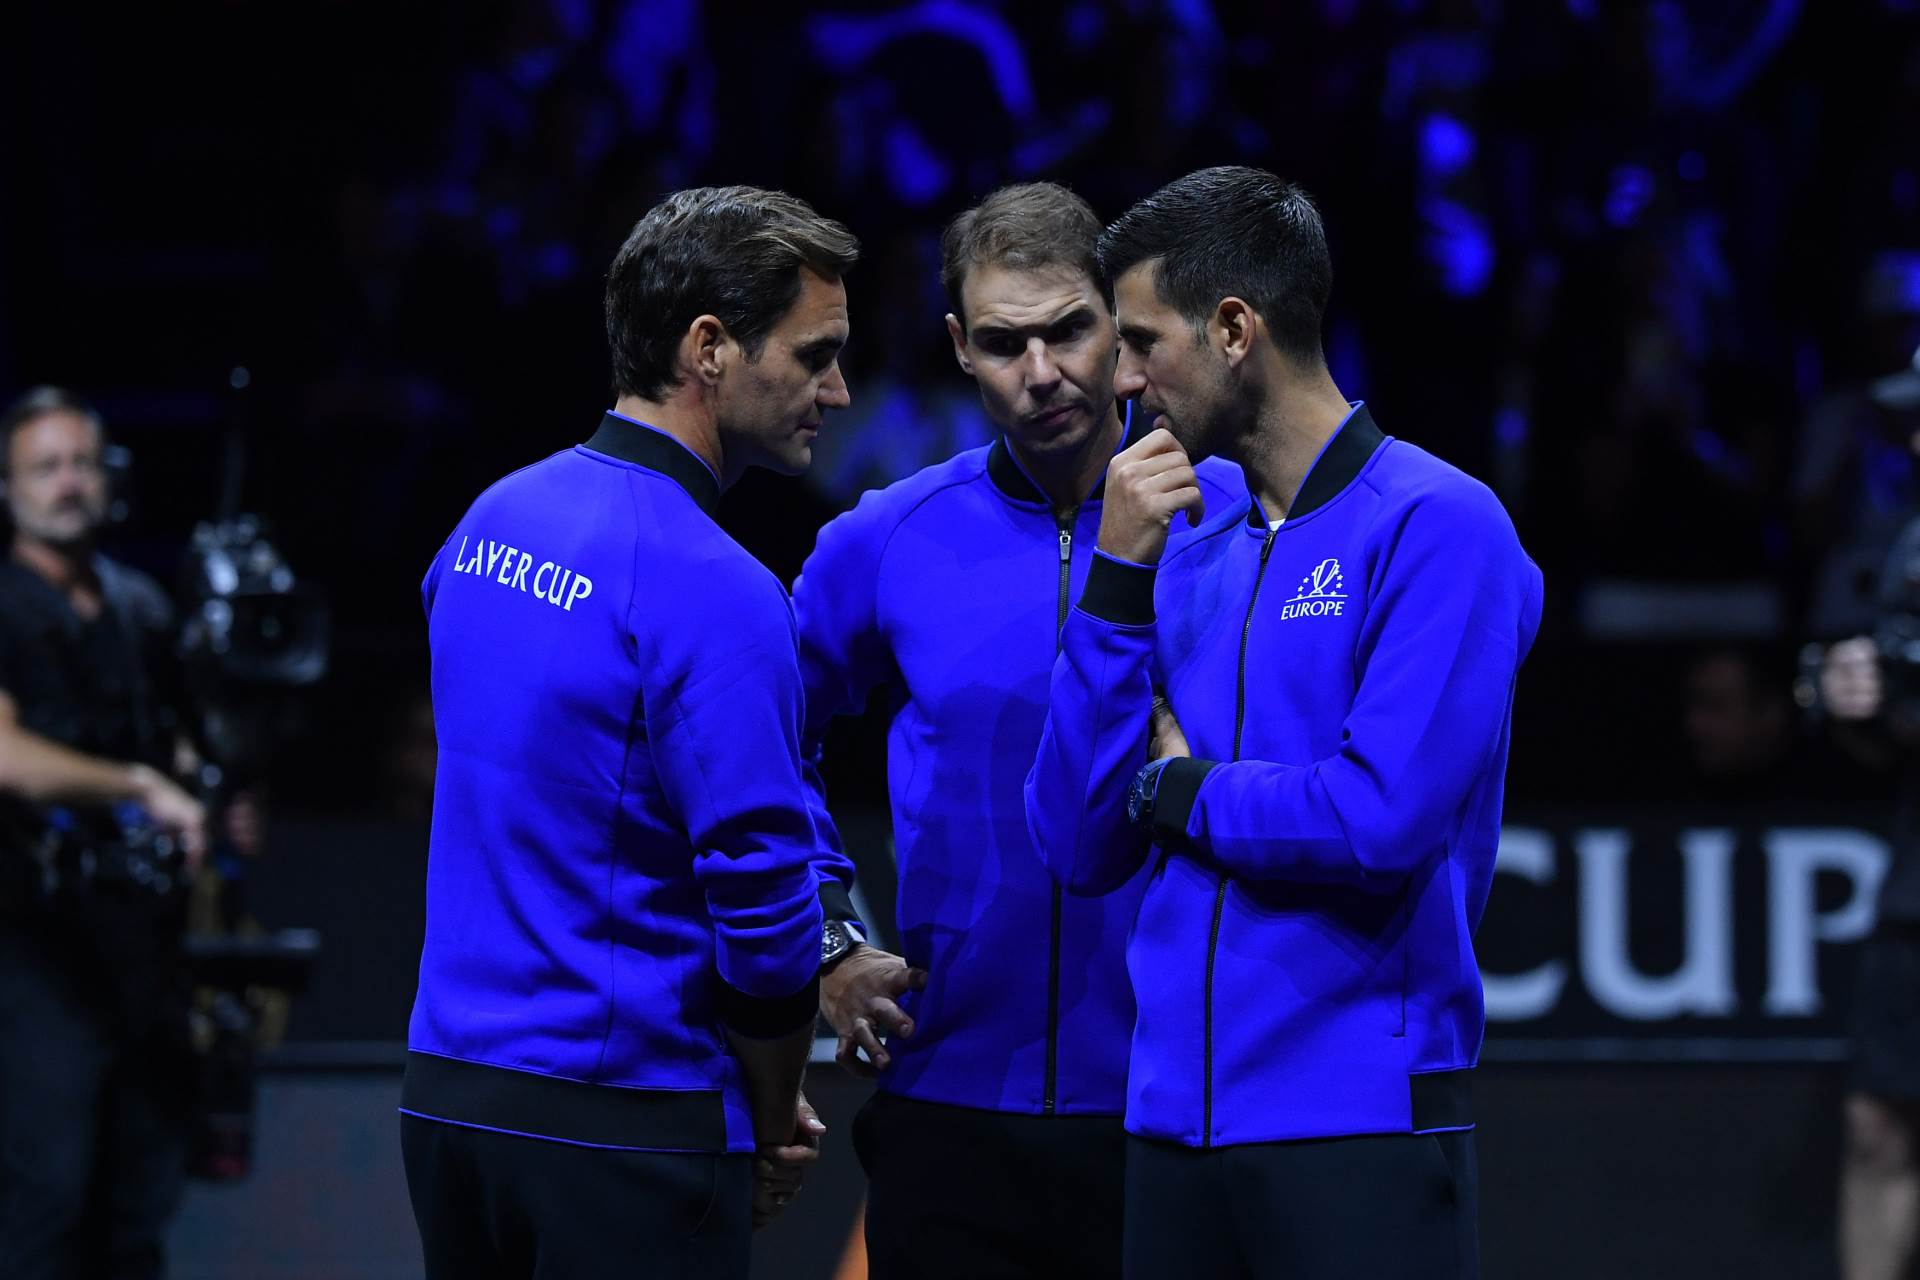  Novaku Djokovicu nisu cestitali Rodzer Federer i Rafael Nadal 